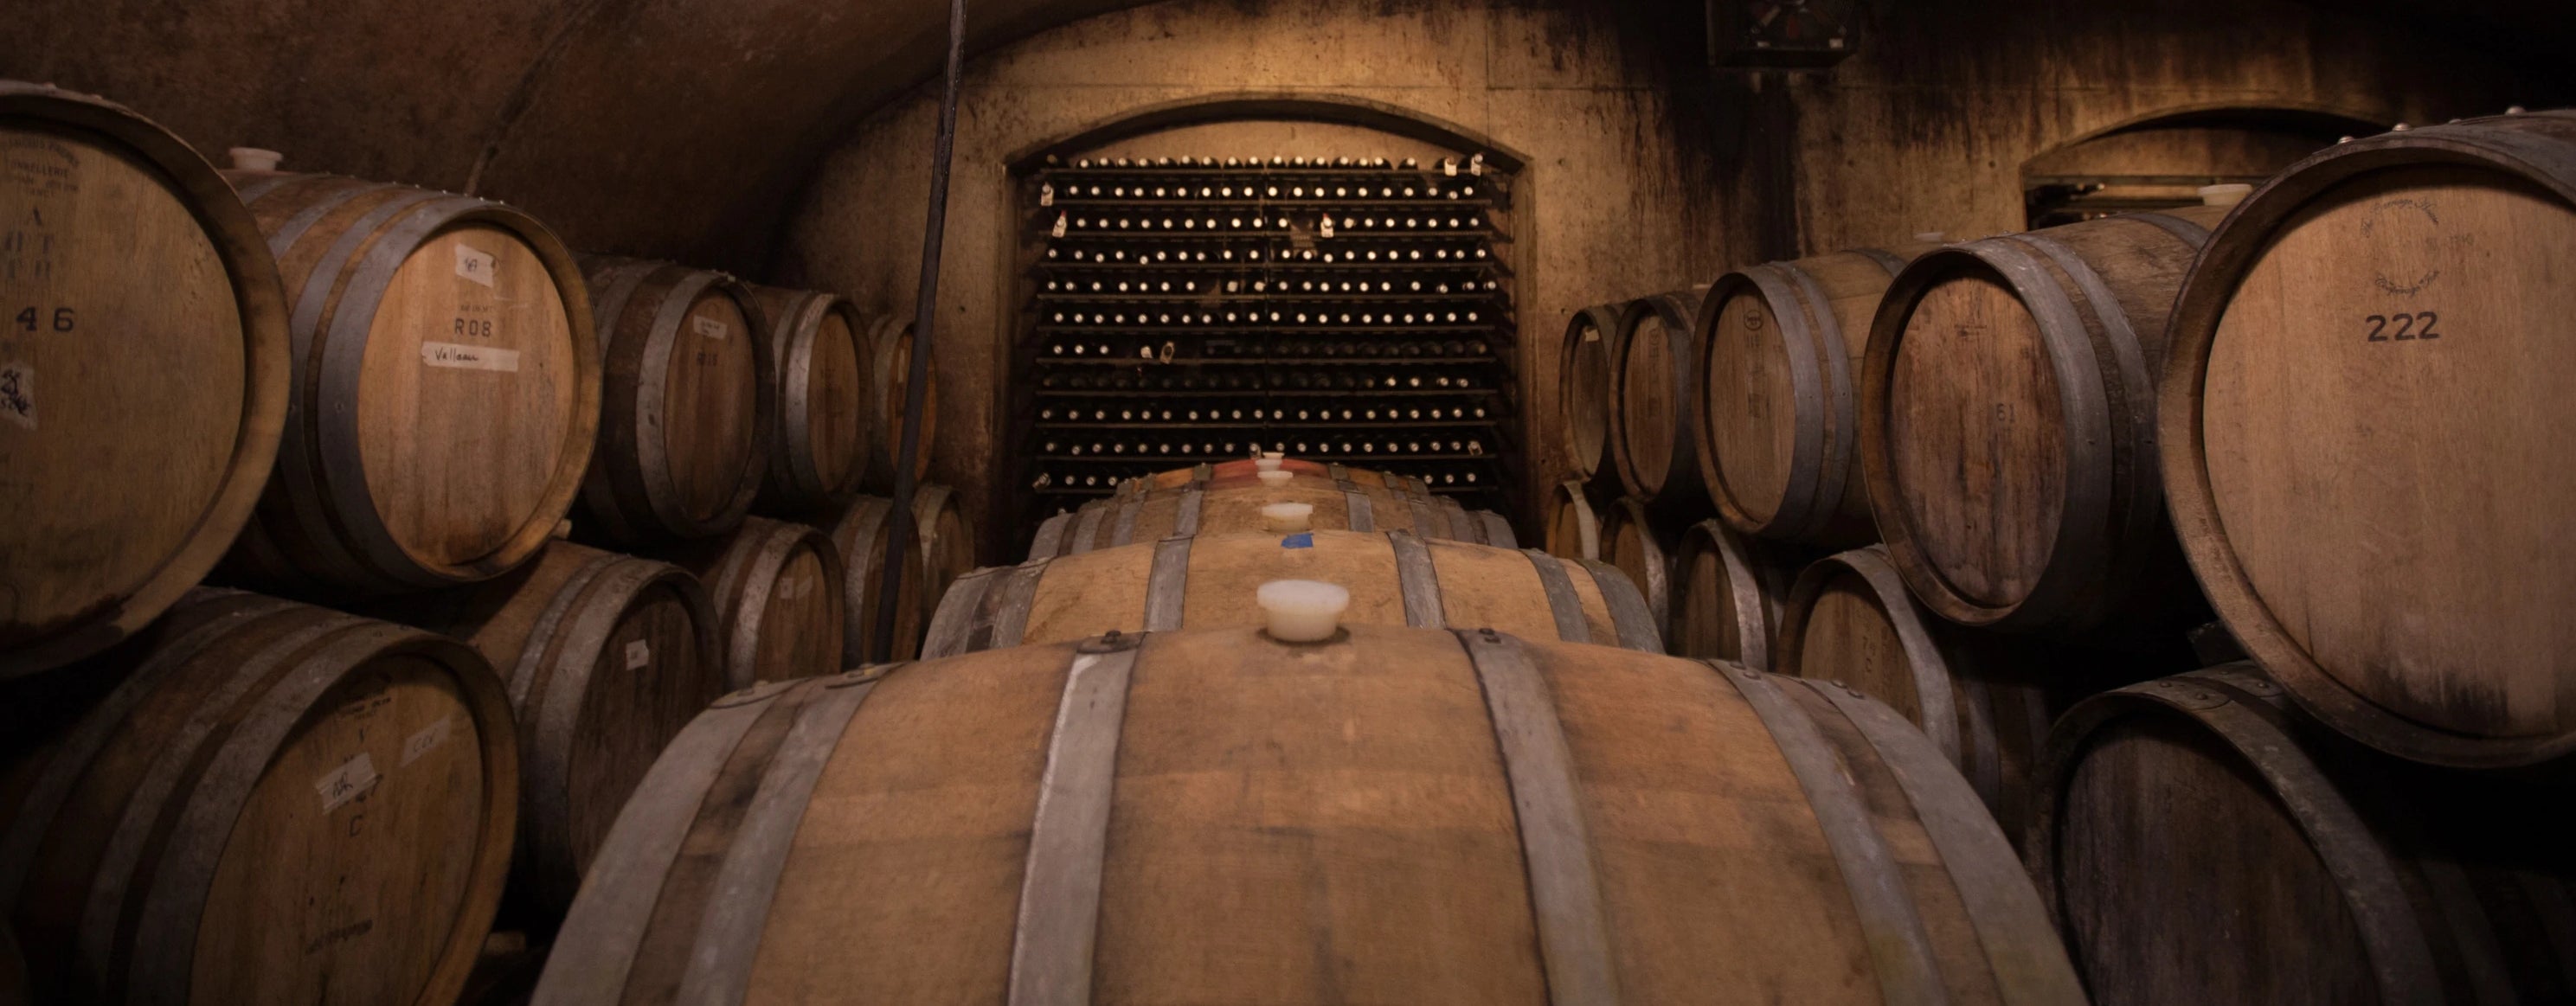 2021 Vineyard Pinot Noir – Closson Chase Vineyards